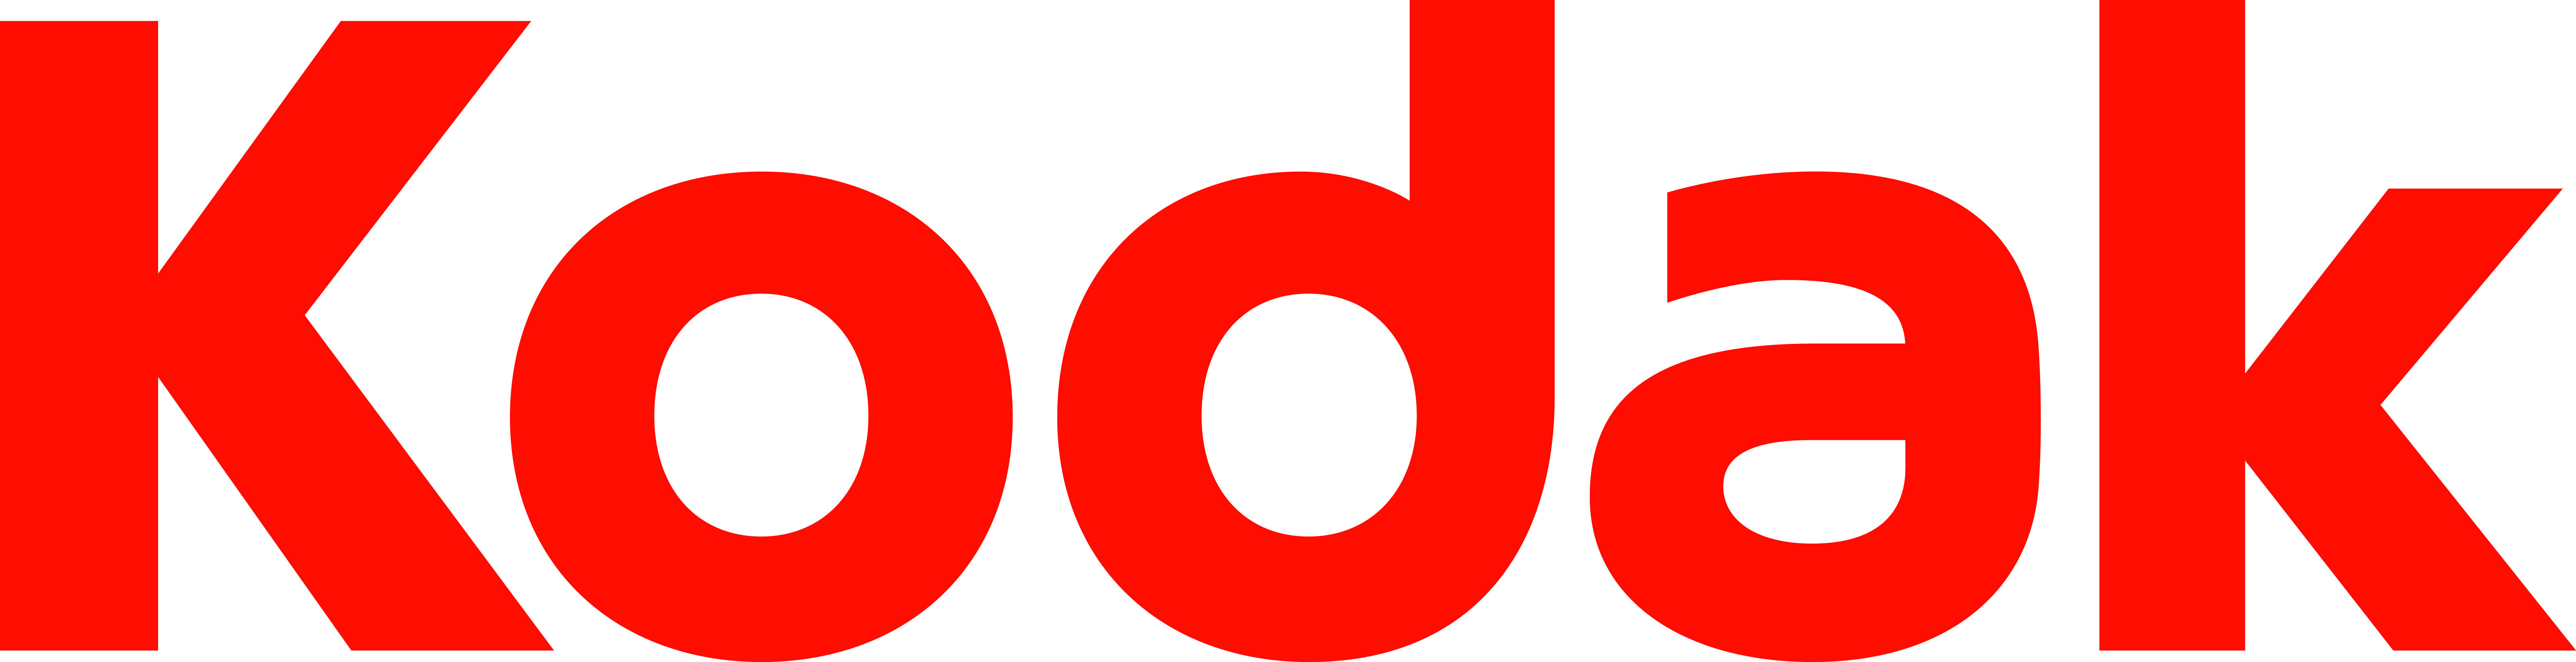 Stata Logo - KODAK è stata sponsor della #ggdmilano10 e della #ggdmilano14 ...